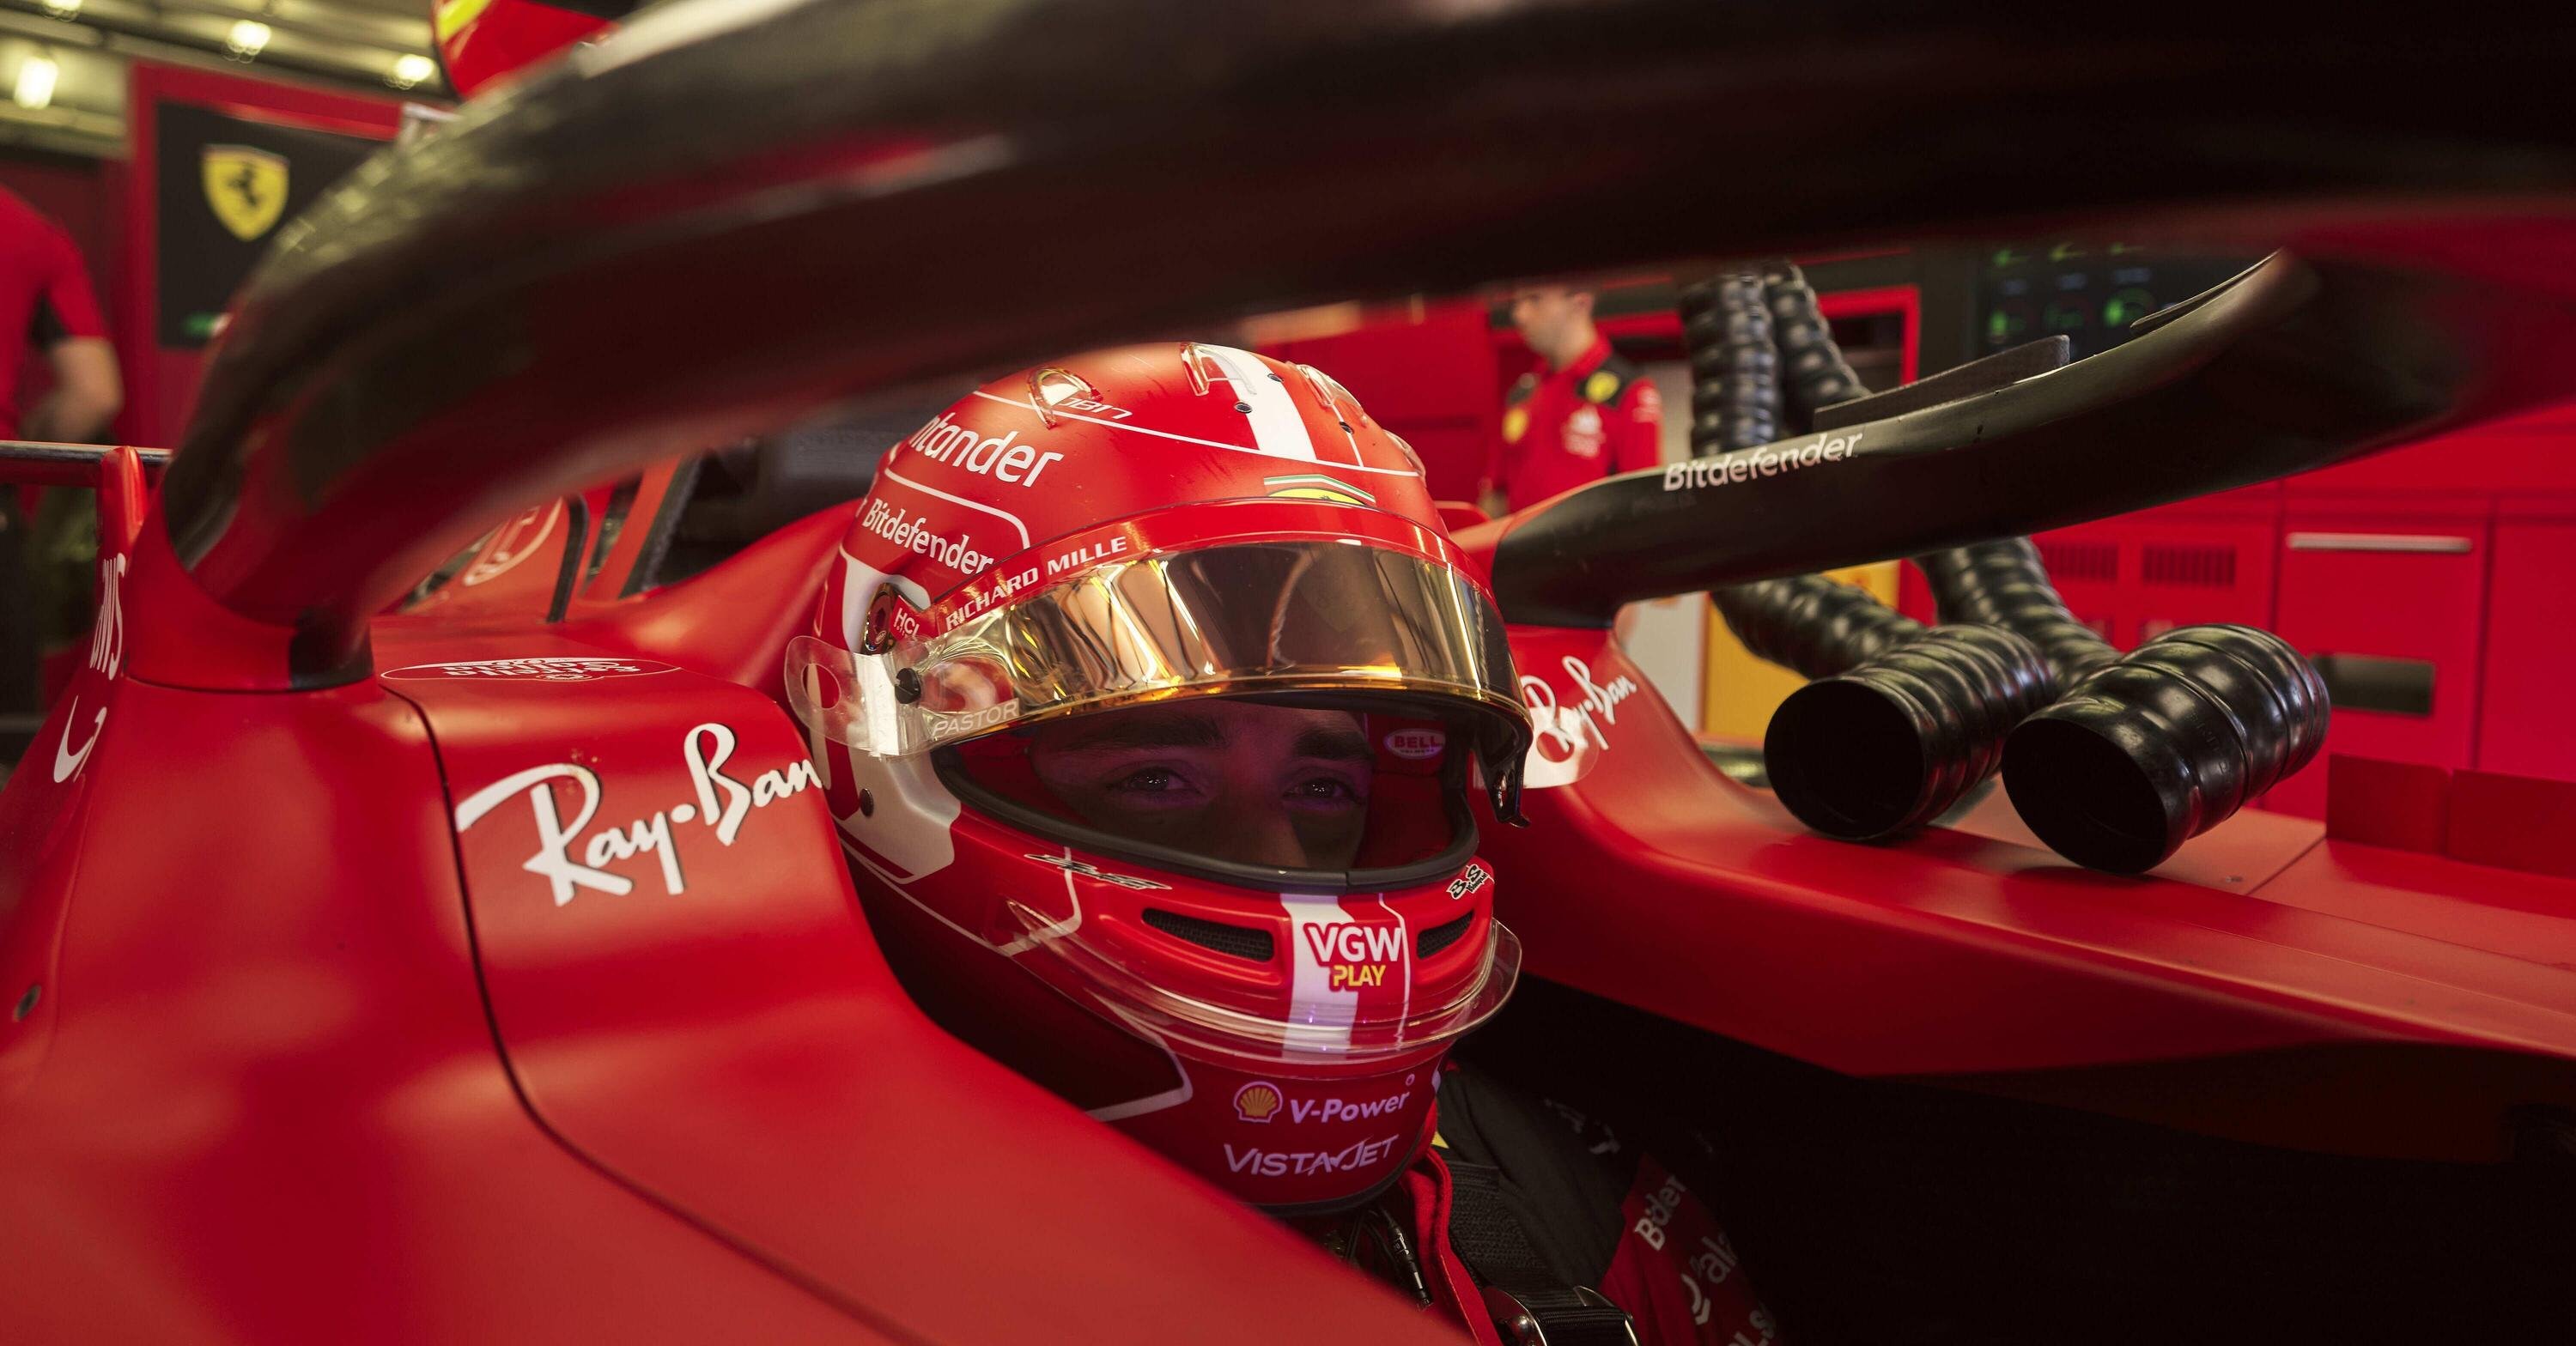 F1. Ferrari, Leclerc in penalit&agrave; a Jeddah: sar&agrave; installata la terza centralina